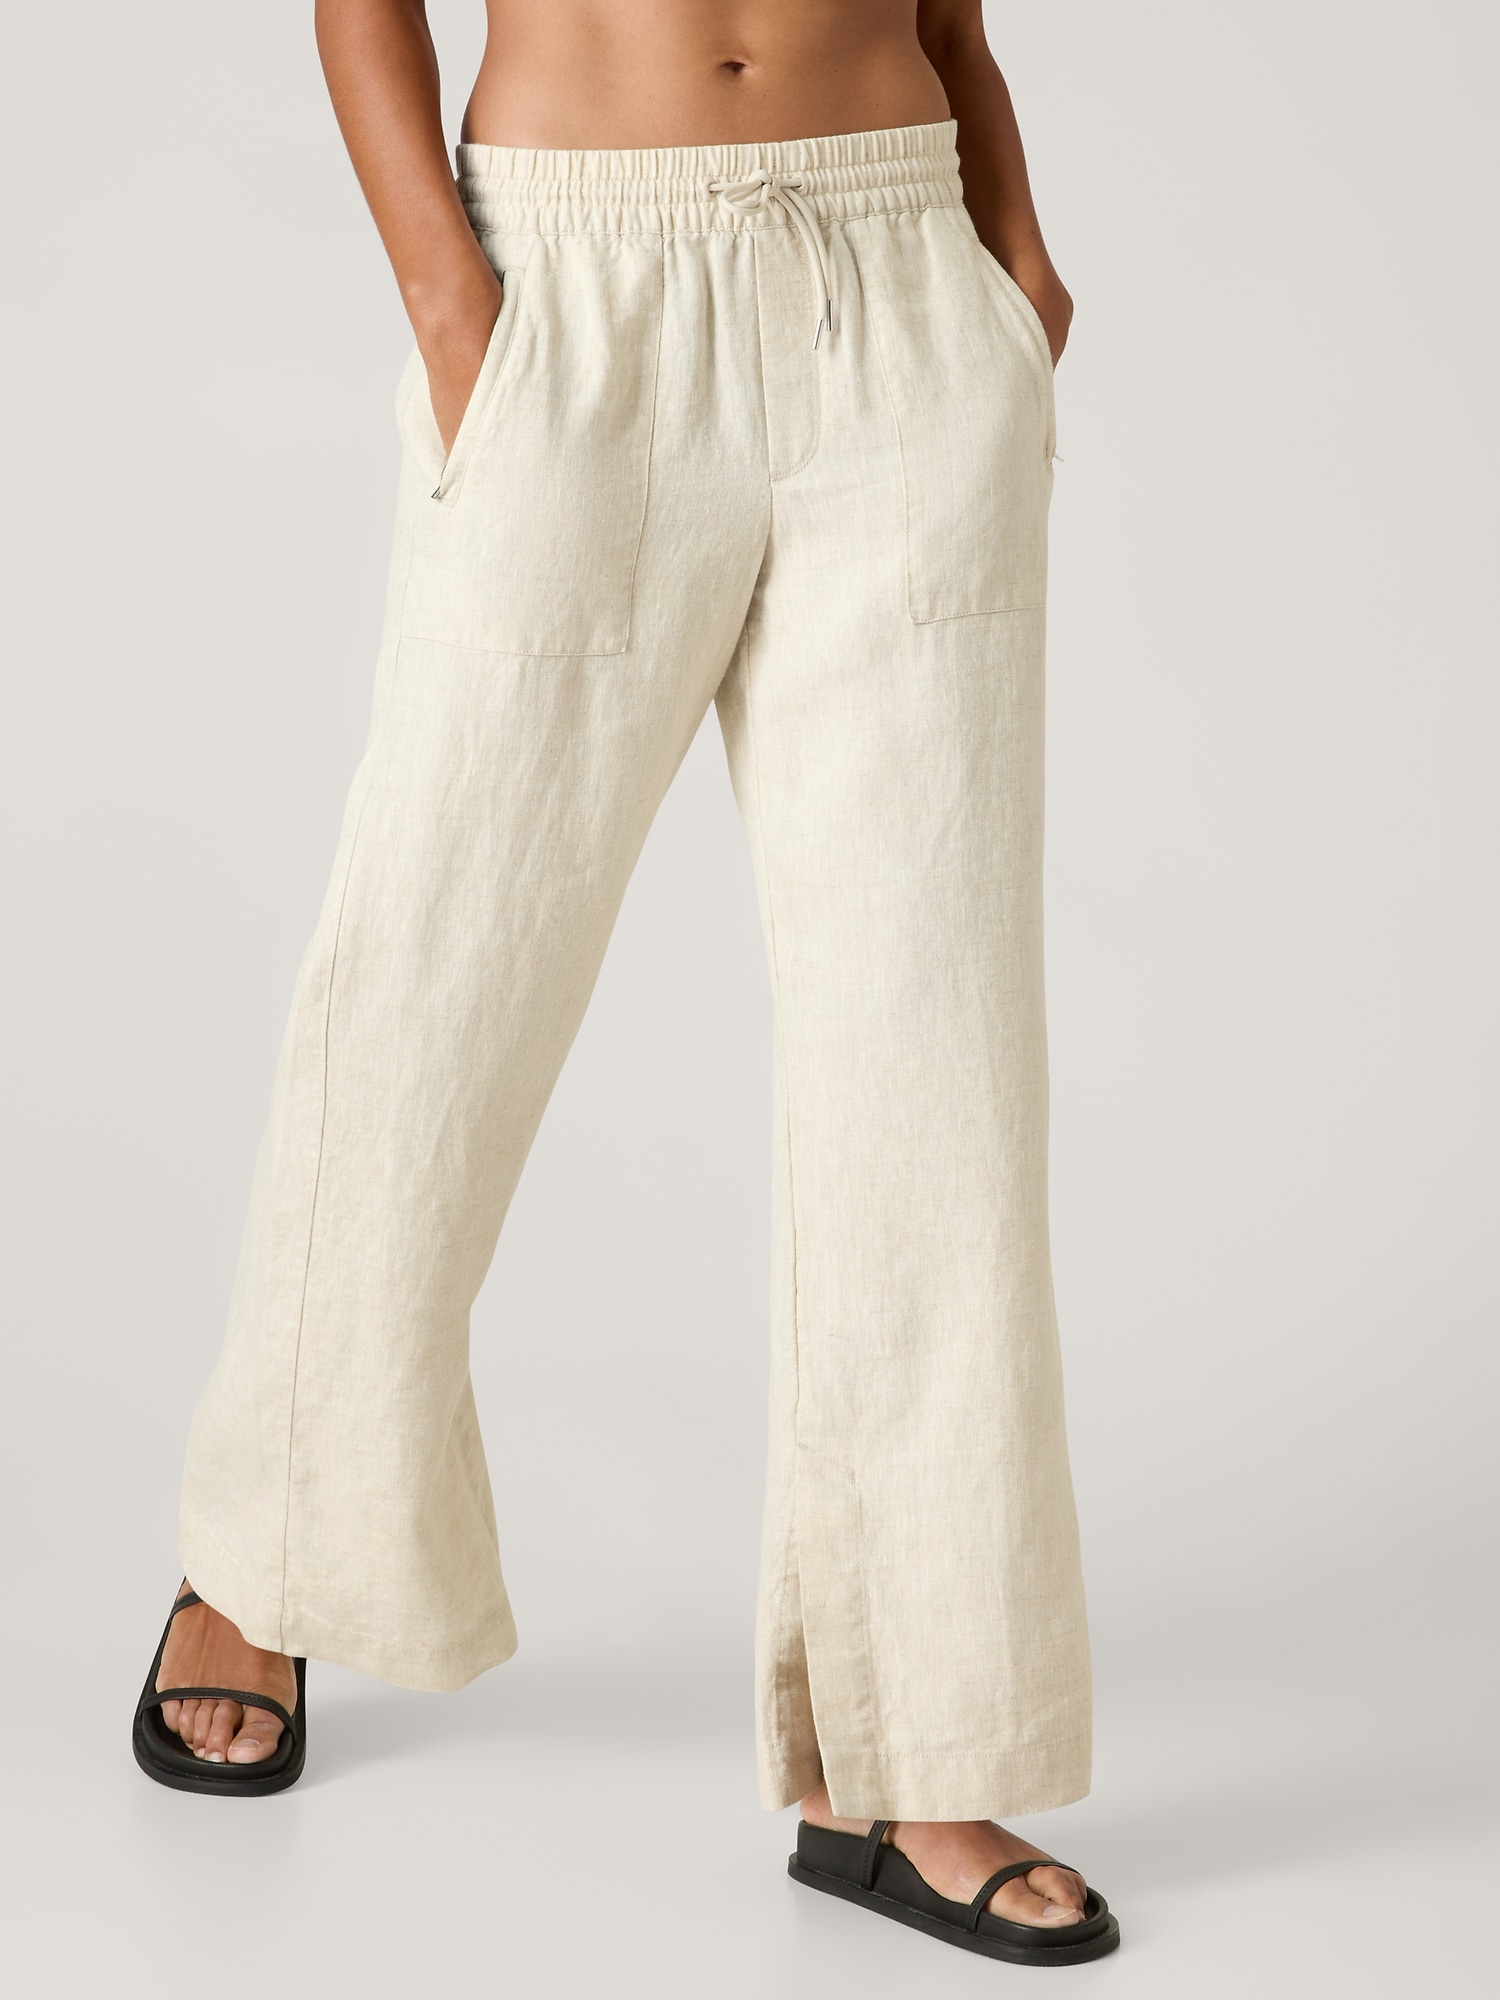 Mrat Wide Leg Trouser Pants for Women Casual Cotton Linen